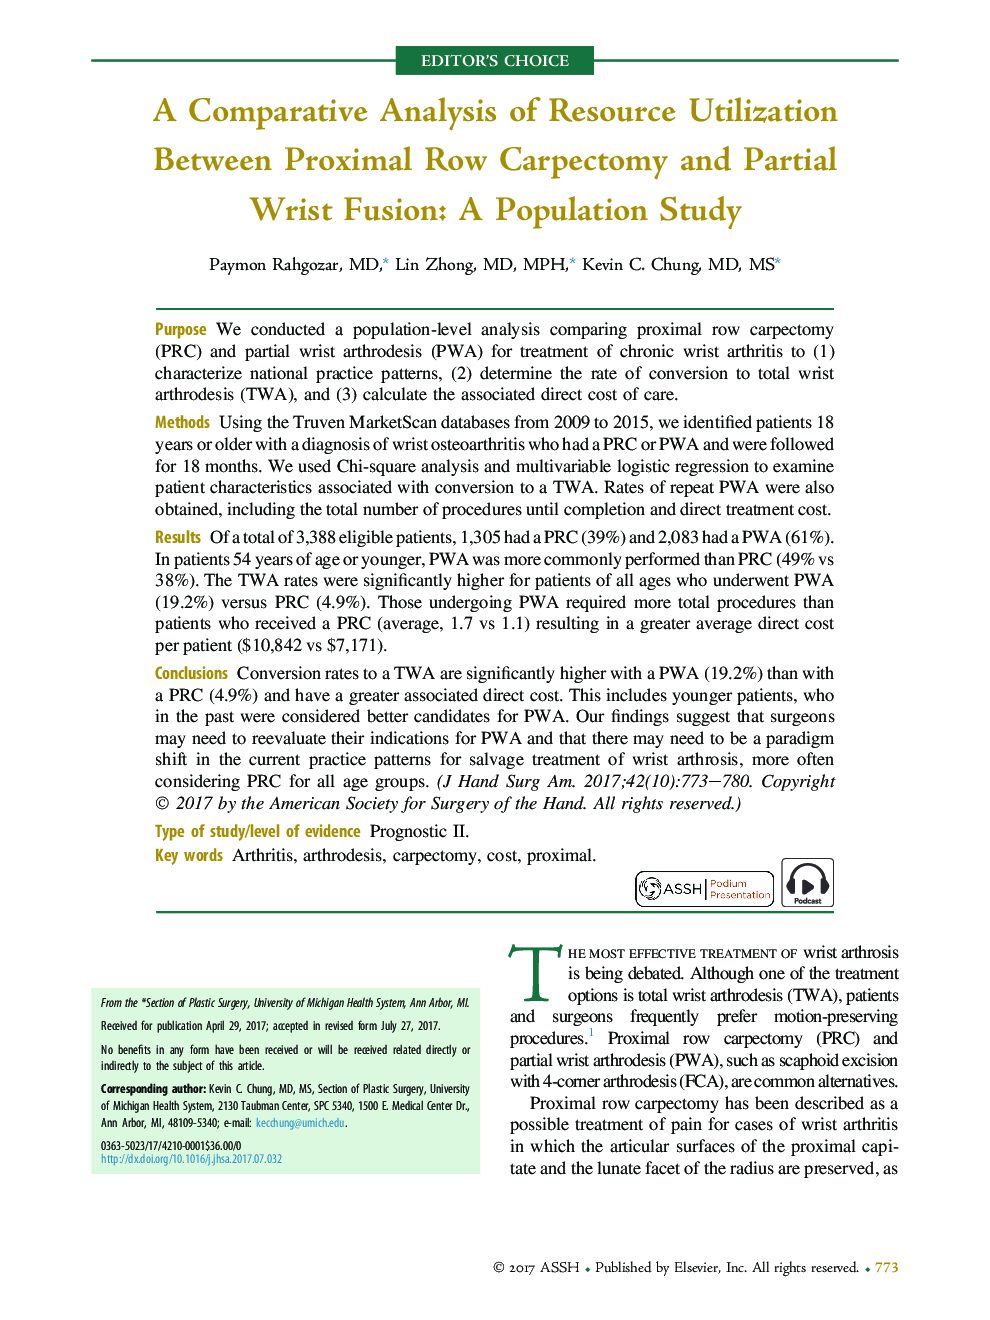 تجزیه و تحلیل مقایسهای استفاده از منابع میان کارکامکتومی ریشه پروگزیمال و فیوژن جزئی مچ دست: مطالعه جمعیتی 